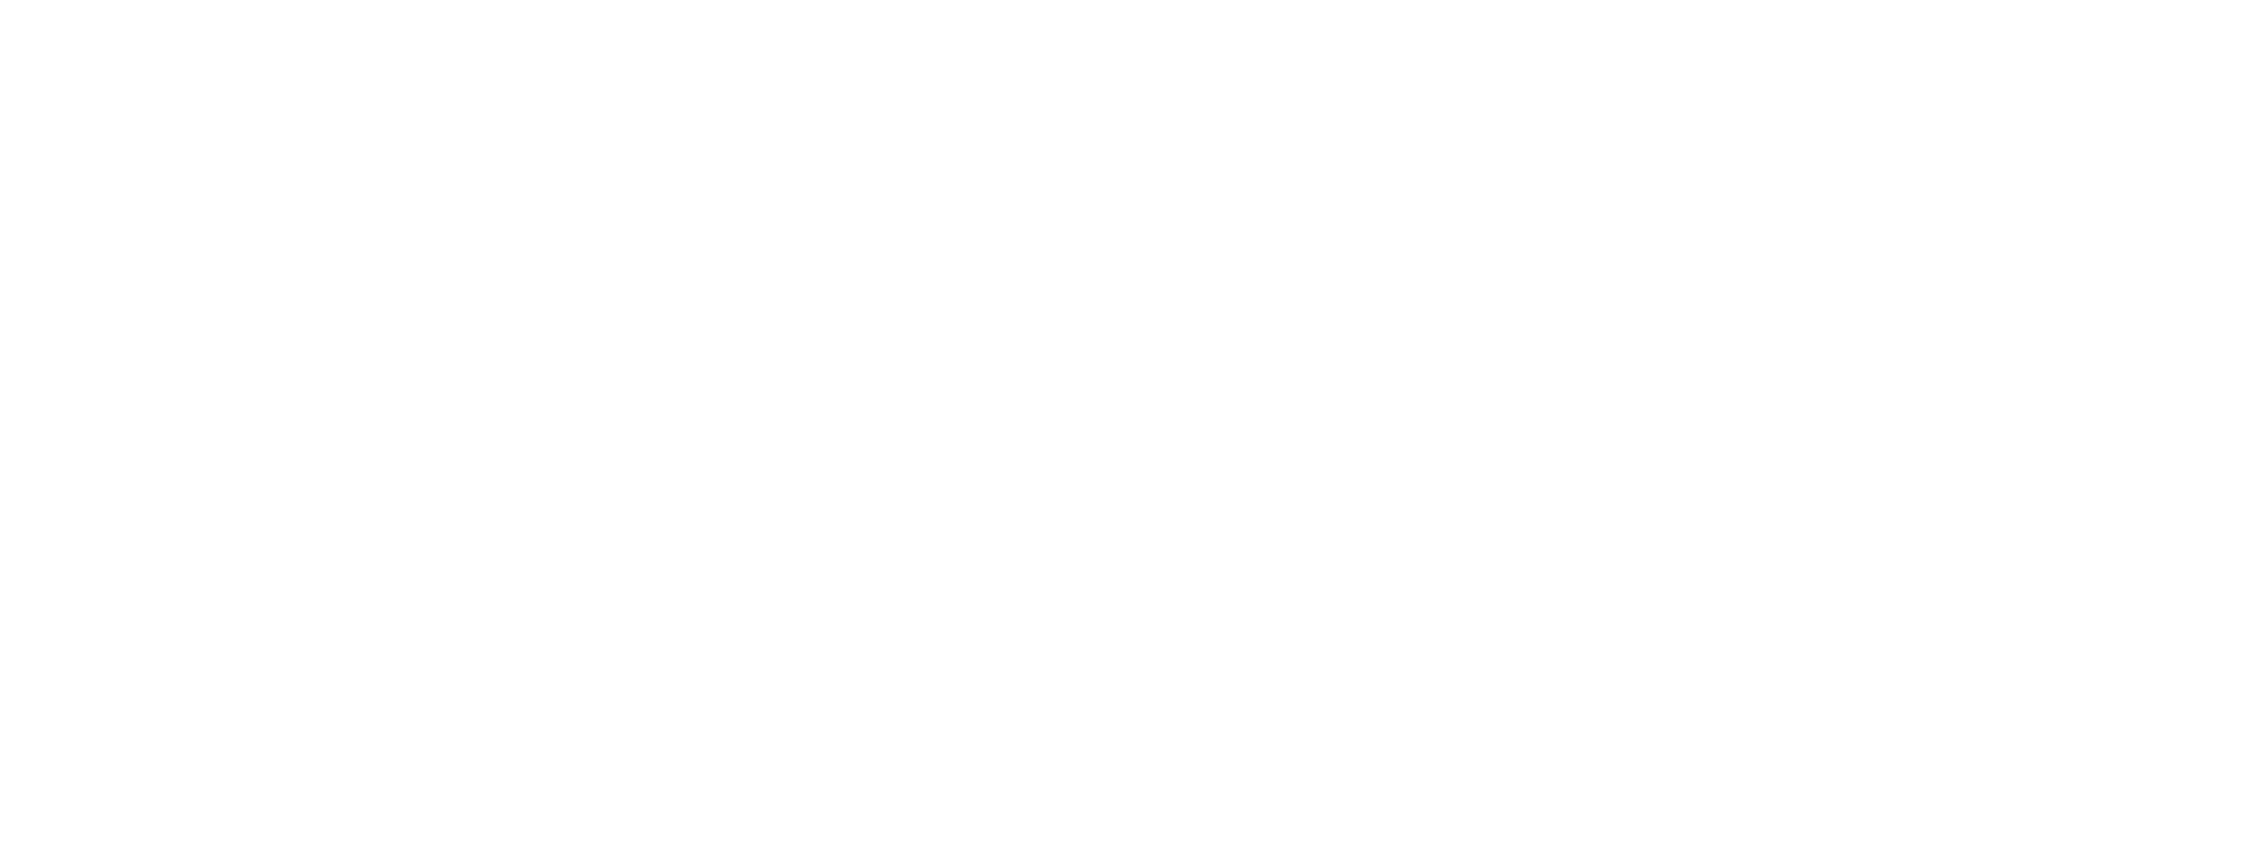 RoboTape by Innovative Automation